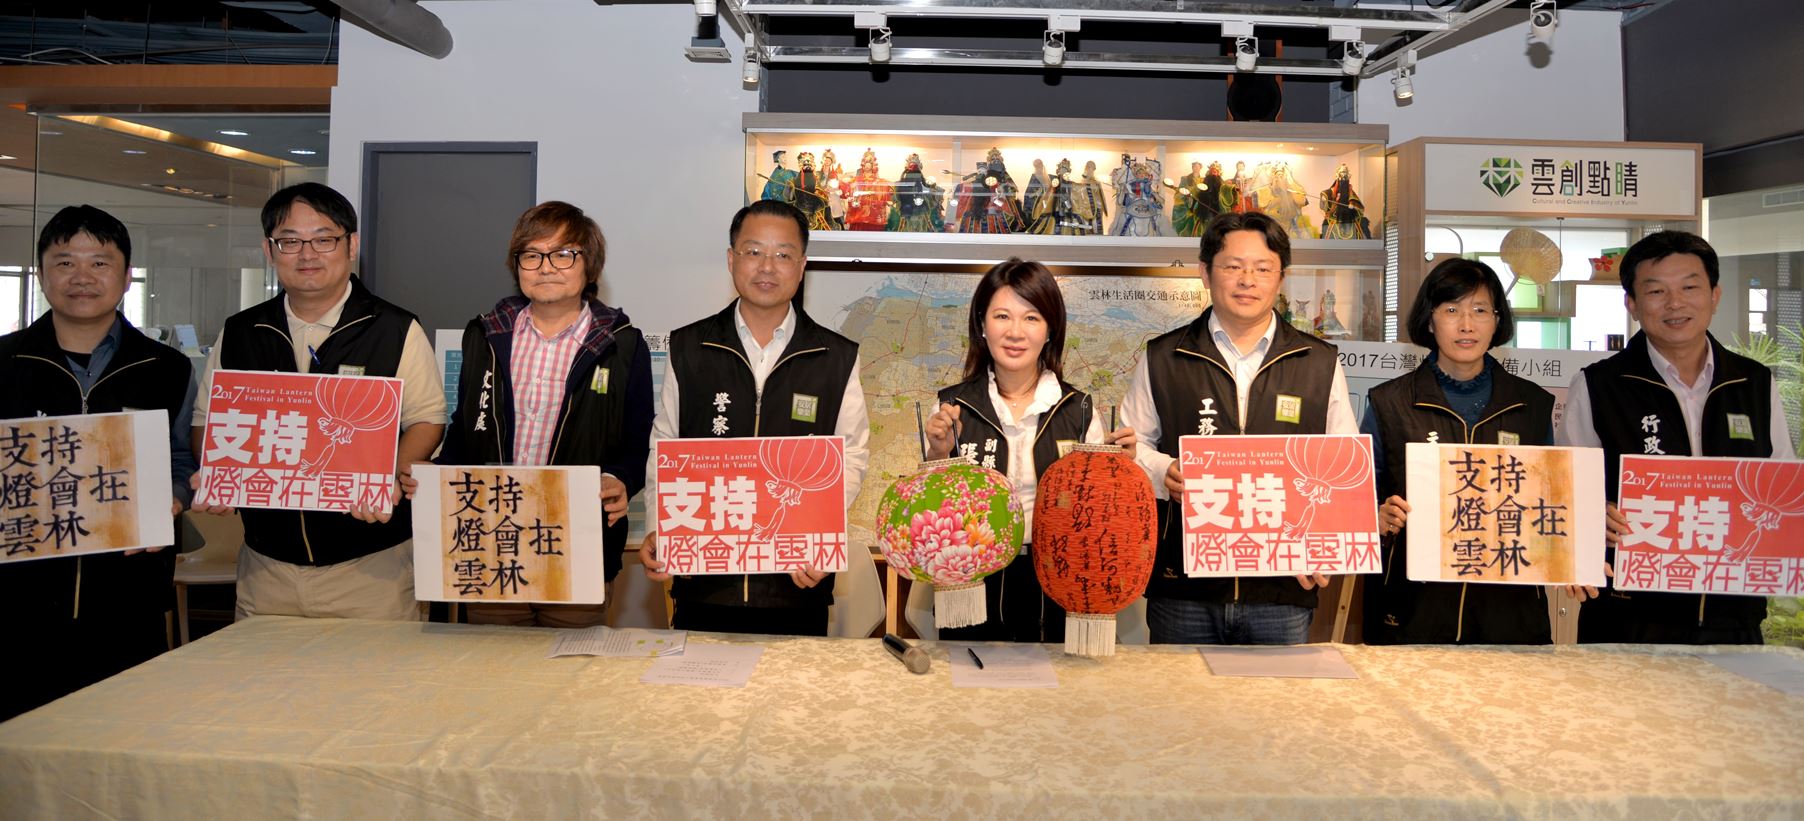 眾所期待　雲縣2017台灣燈會籌備小組宣告啟動